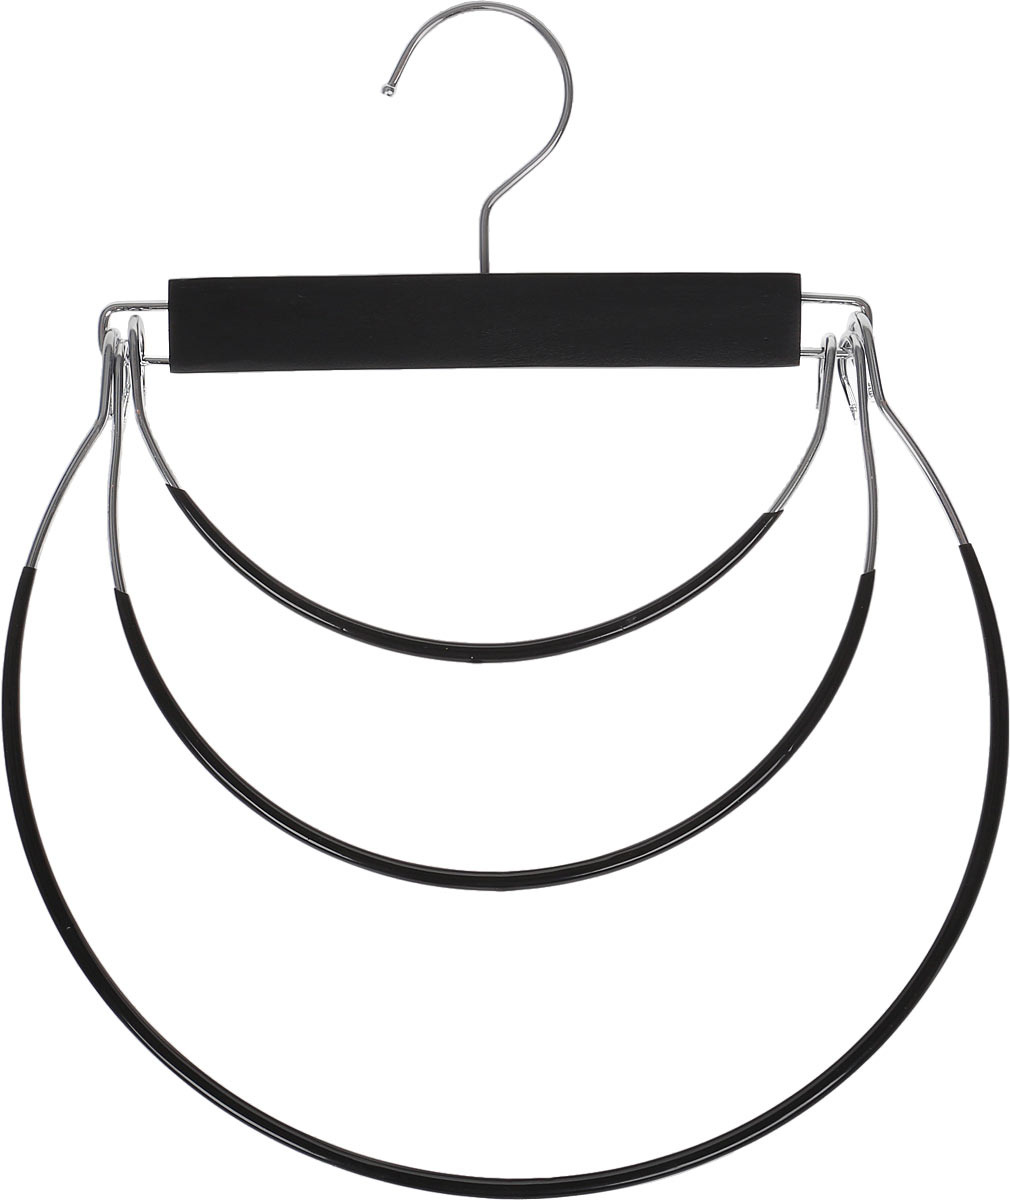 Вешалка-качели Valiant, 3-х уровневая, с противоскользящим покрытием, черный, 27,5 х 34,5 см